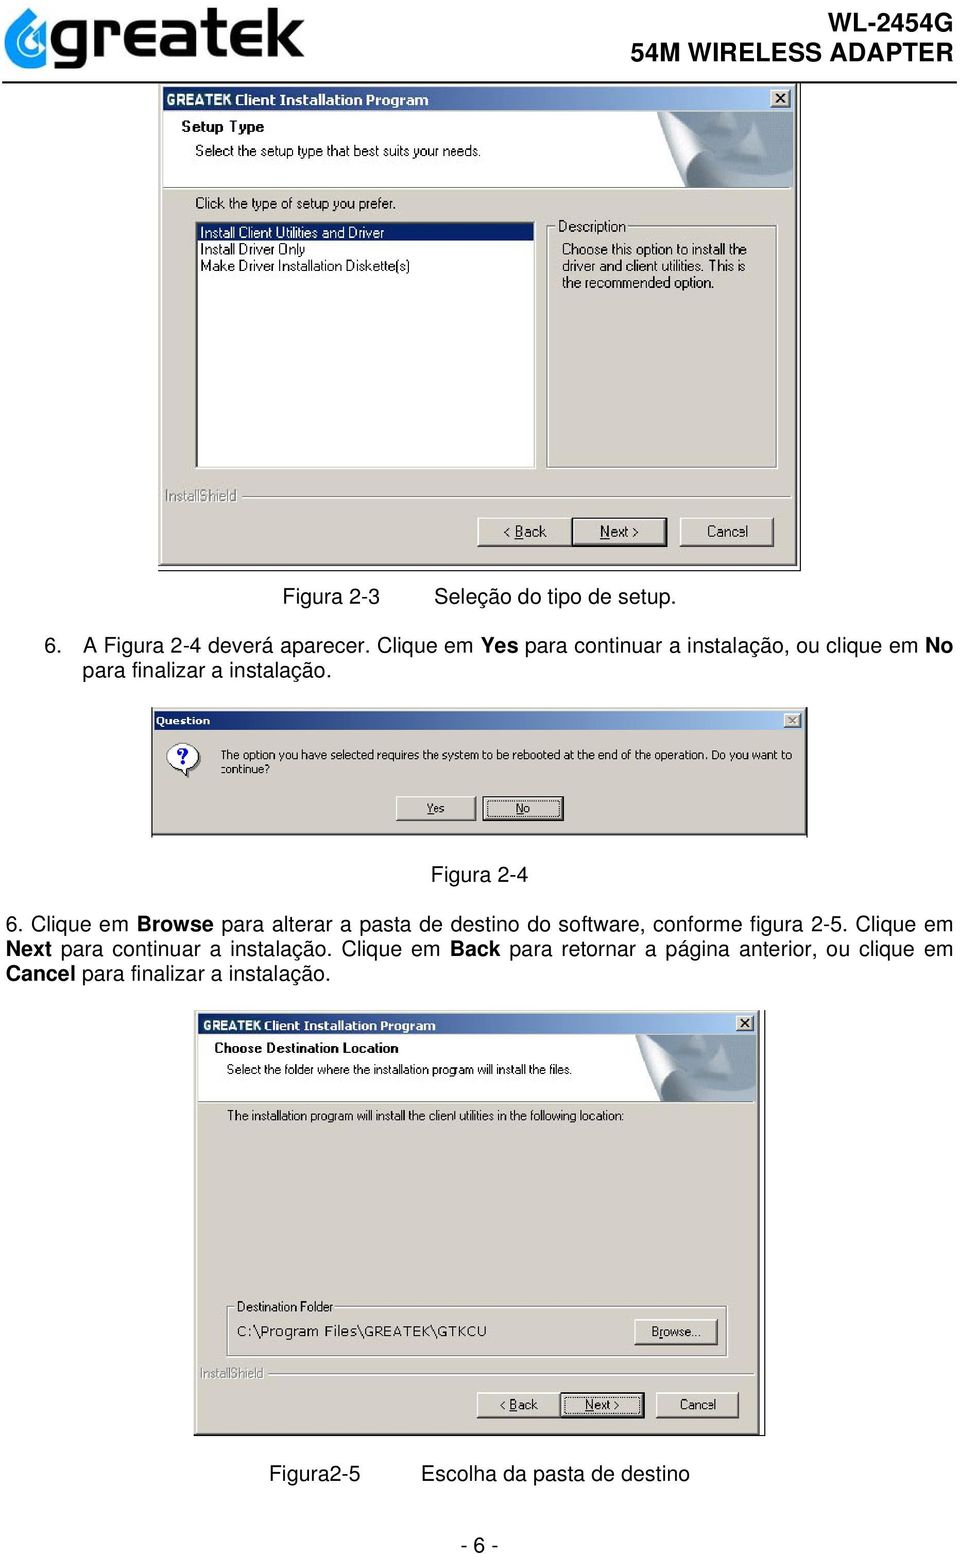 Clique em Browse para alterar a pasta de destino do software, conforme figura 2-5.